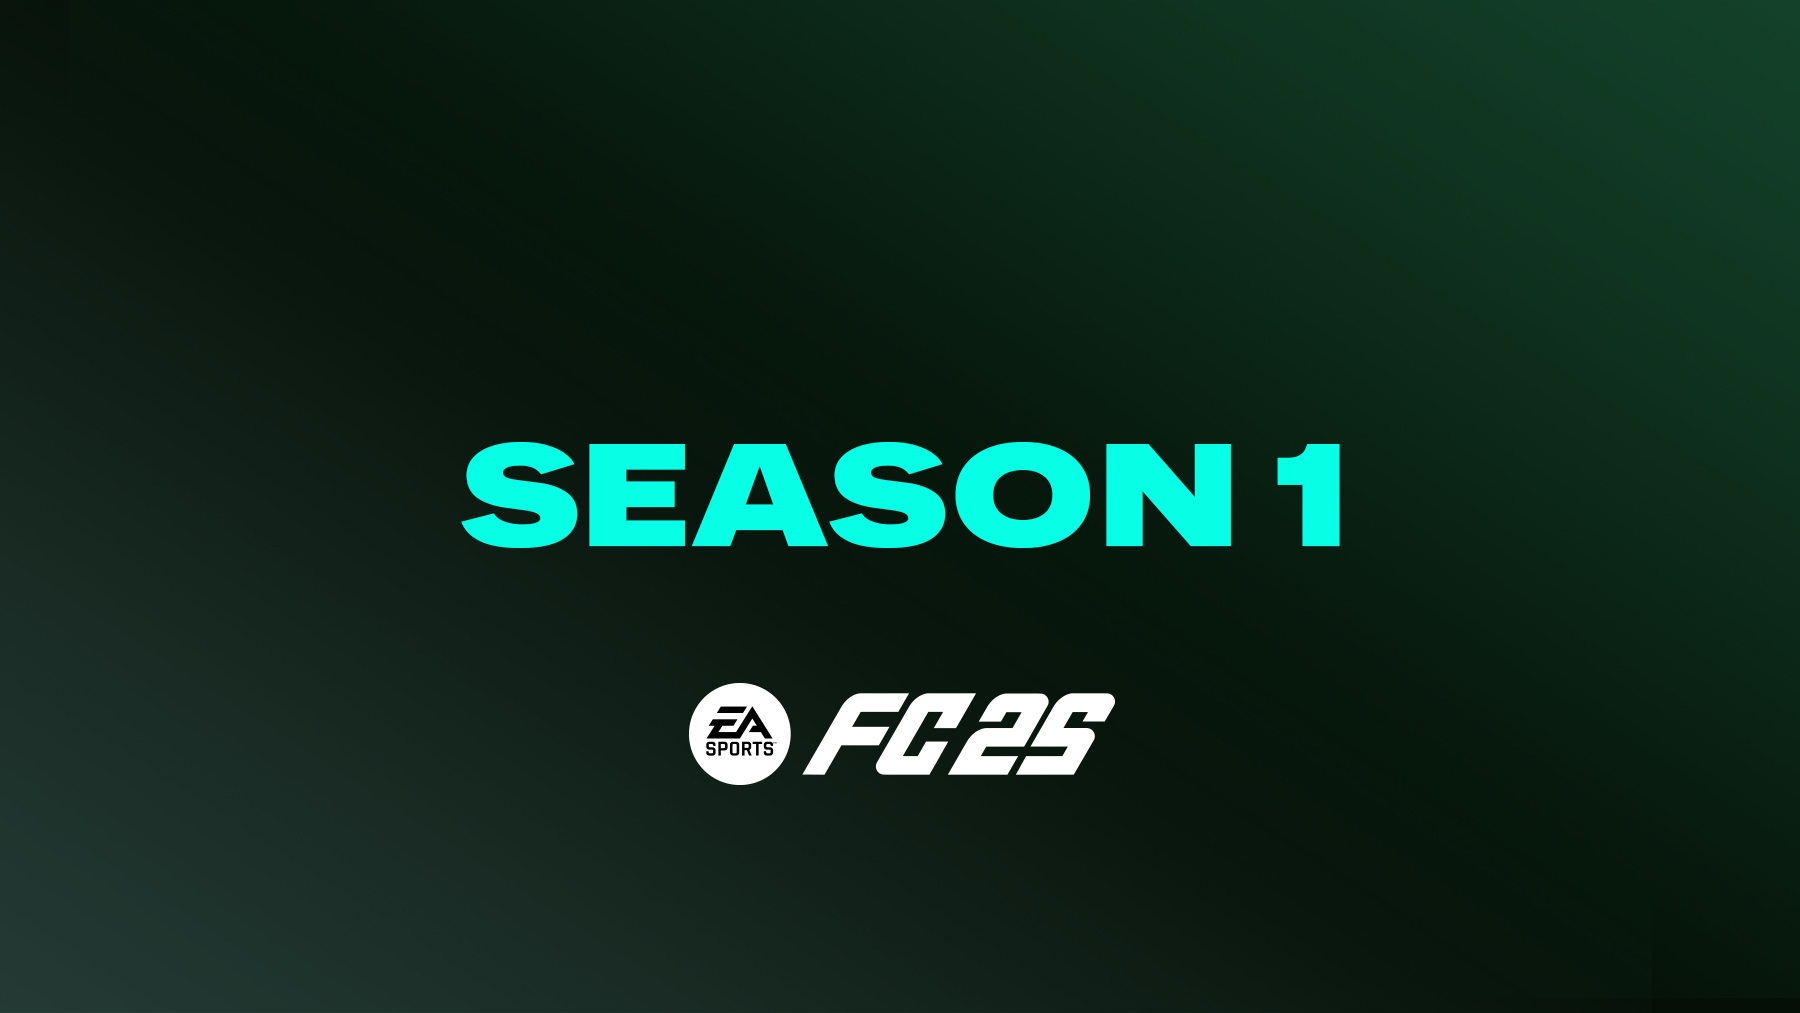 FC 25 Season 1